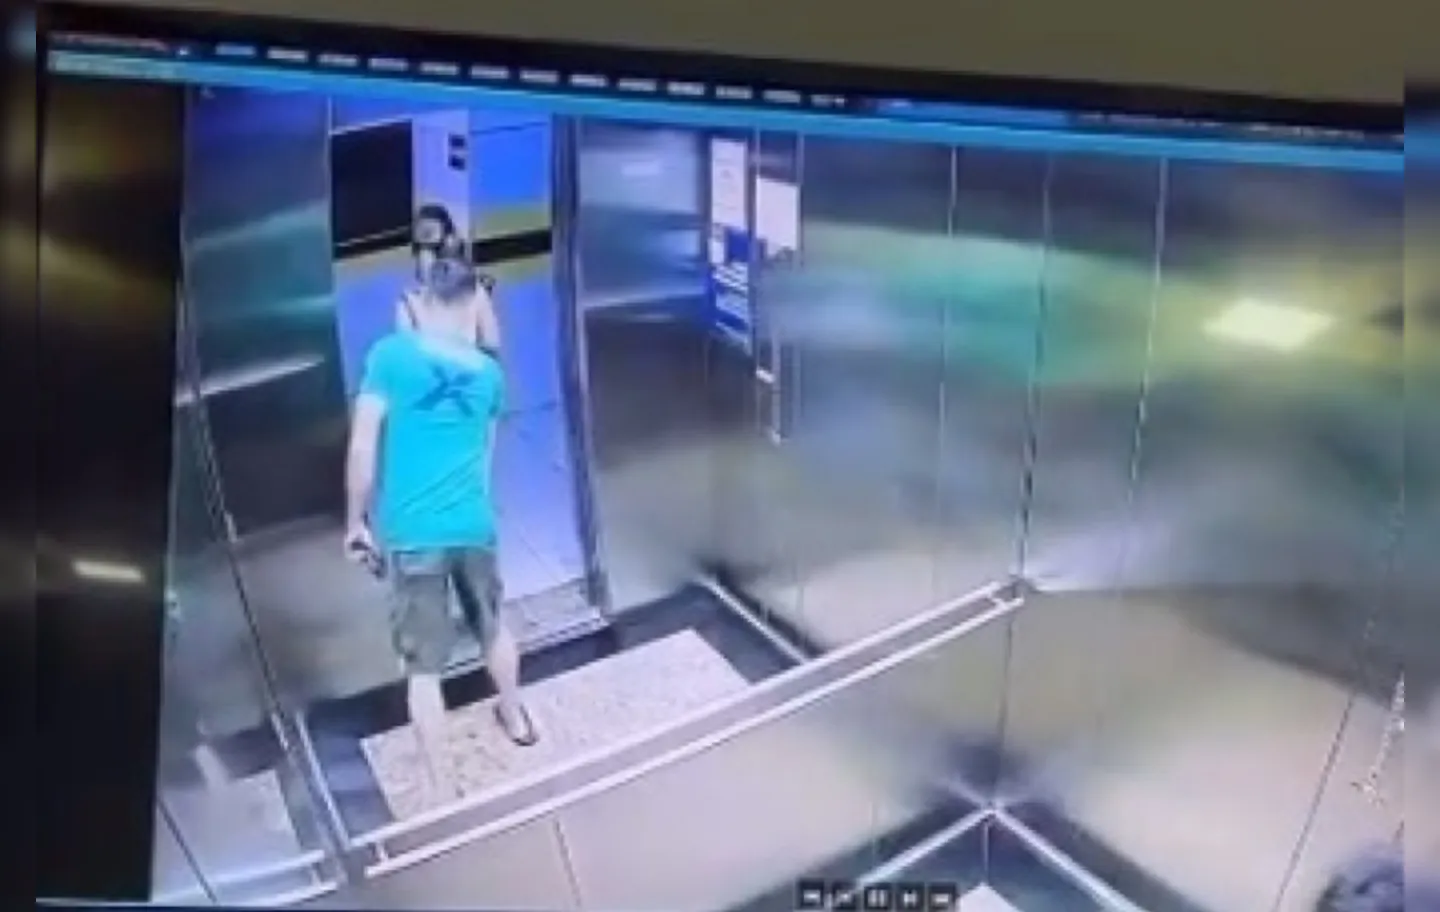 Imagens mostram que tanto agressor, quanto vítima estavam em um elevador